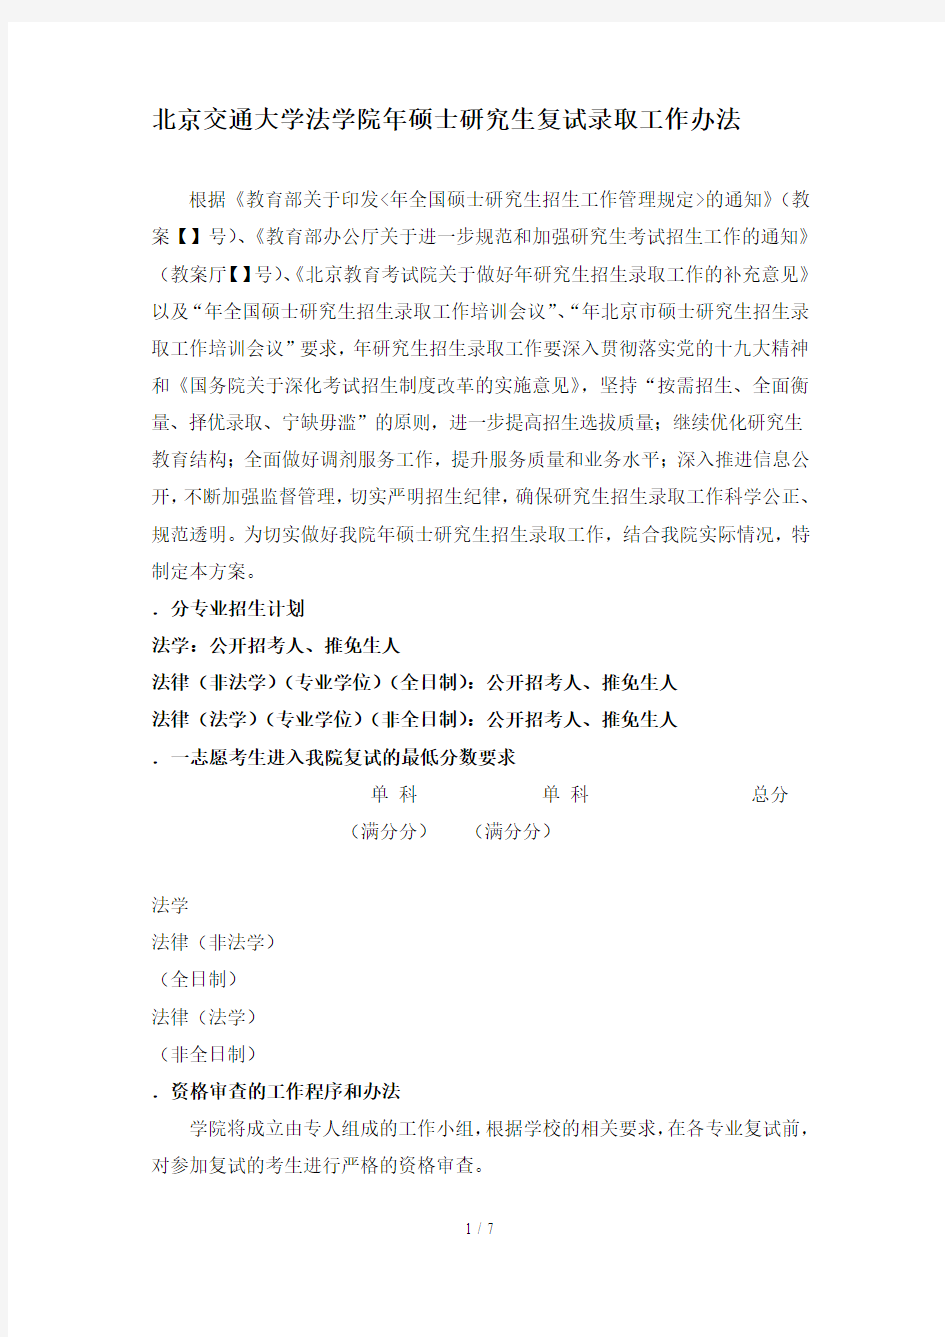 北京交通大学法学院2019年硕士研究生复试录取工作办法